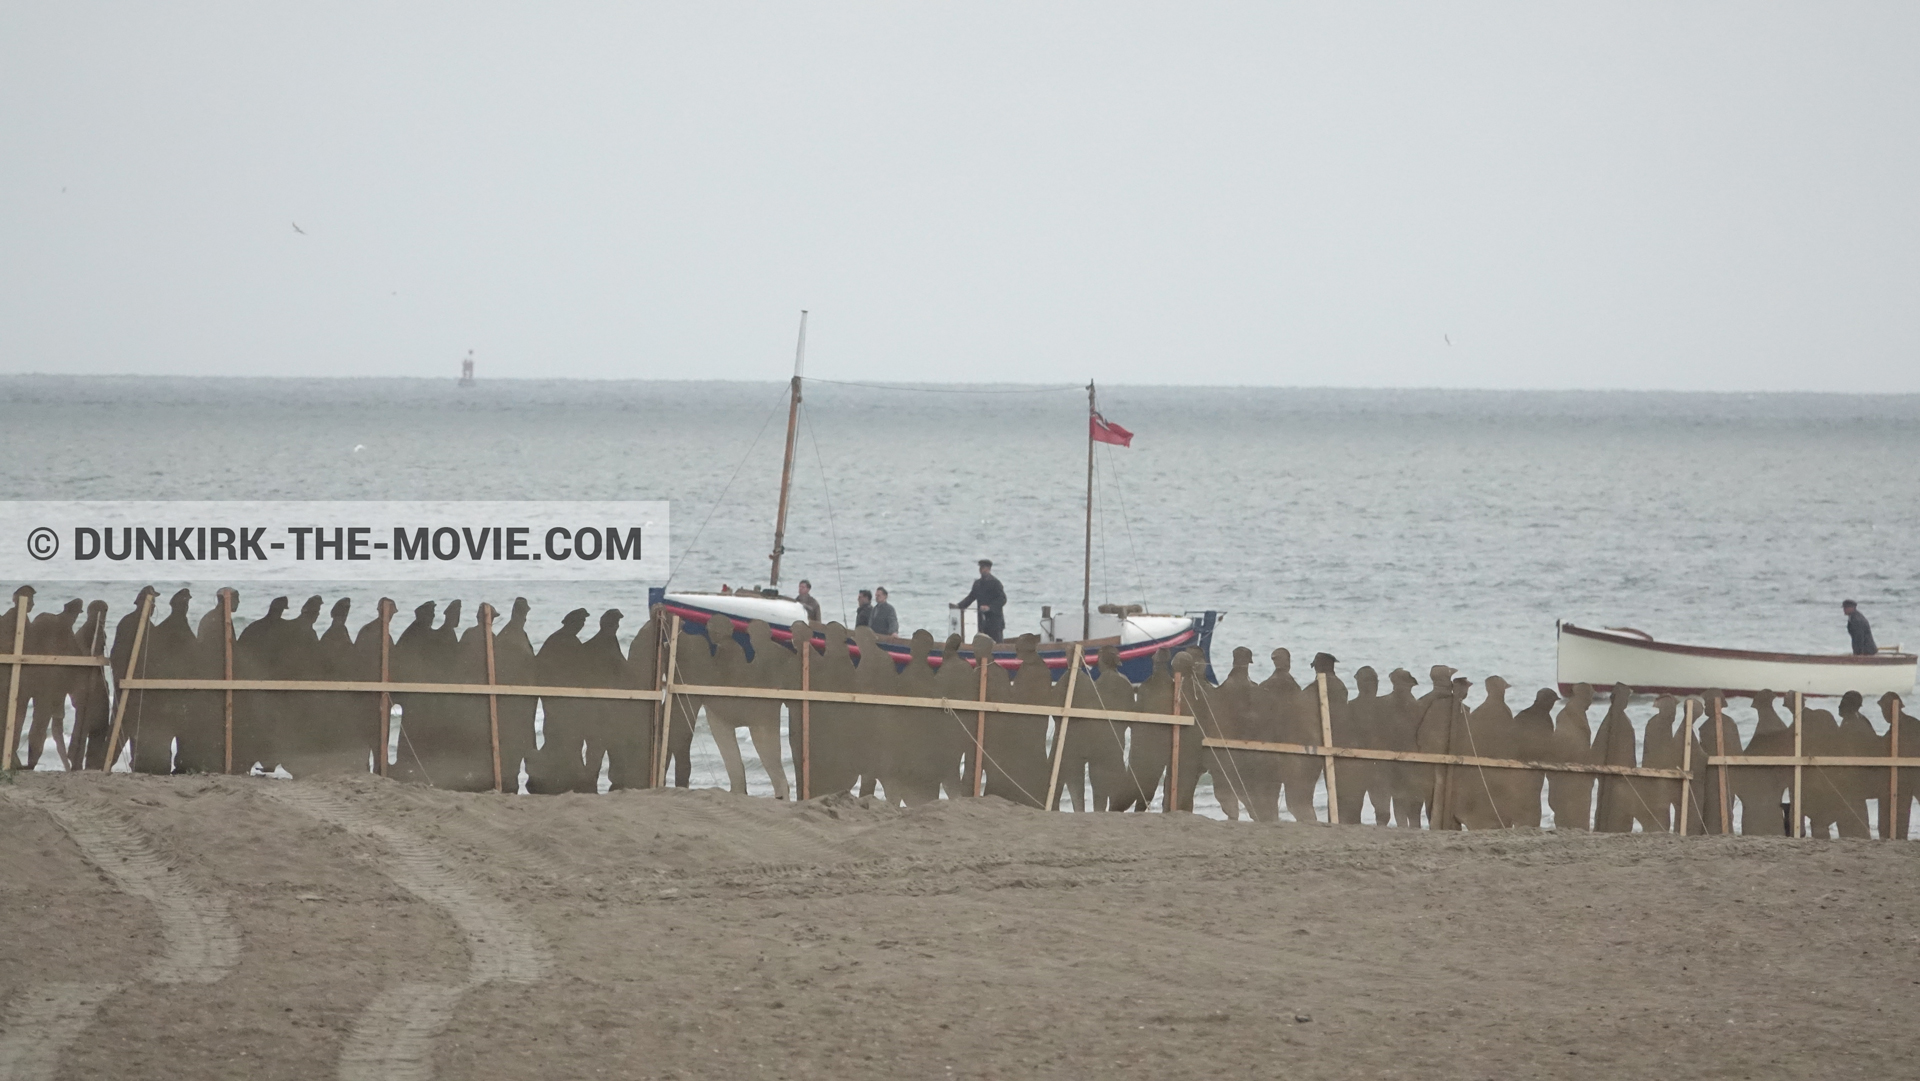 Fotos con barco, decoración, playa, del bote salvavidas Henry Finlay,  durante el rodaje de la película Dunkerque de Nolan